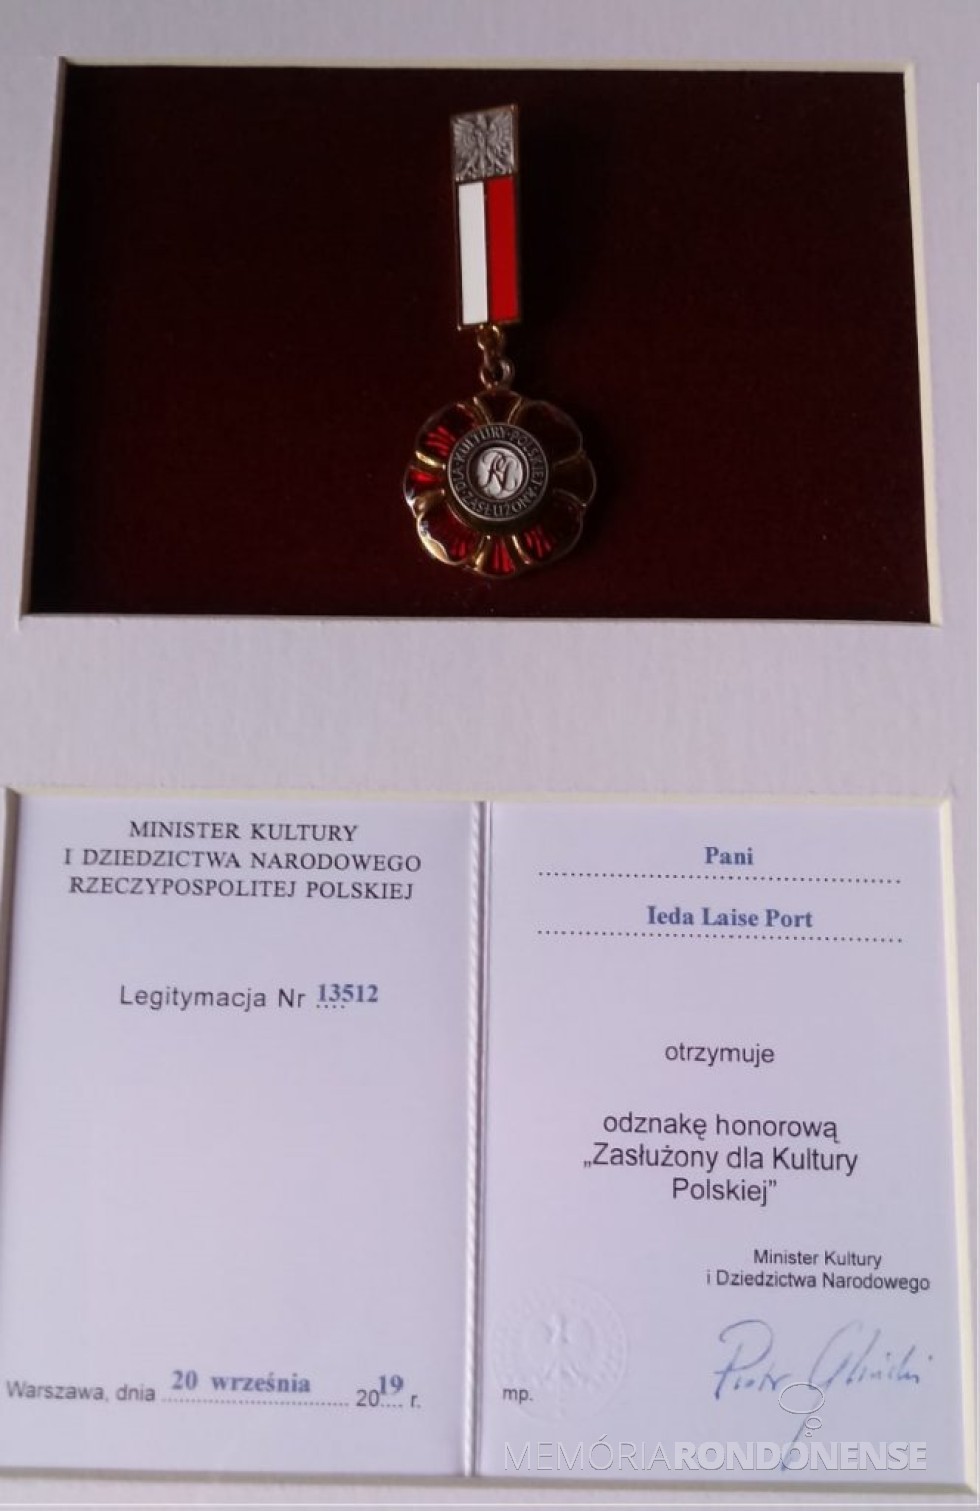 || Comenda e diploma recebidos pela rondonense Ieda Laise Port, em reconhecimento ao seu trabalho em favor da cultura polonesa.
Imagem: Acervo pessoal - FOTO  16  -